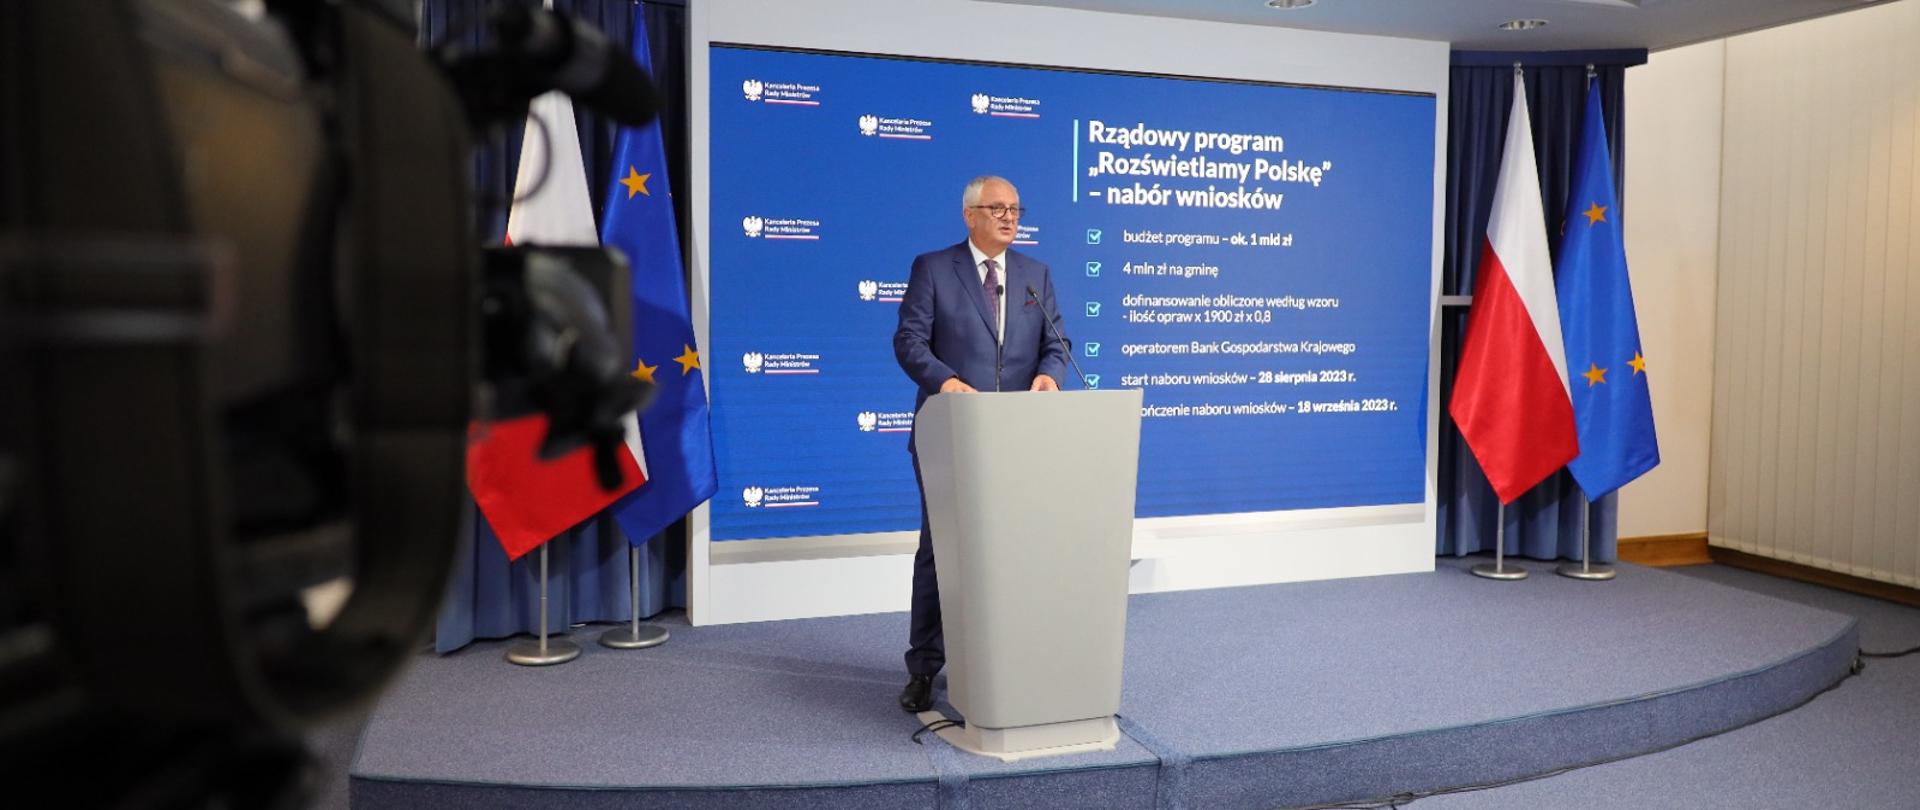 Wiceminister Grzegorz Piechowiak podczas konferencji prasowej, na której zaprezentował program rządowy „Rozświetlamy Polskę”.